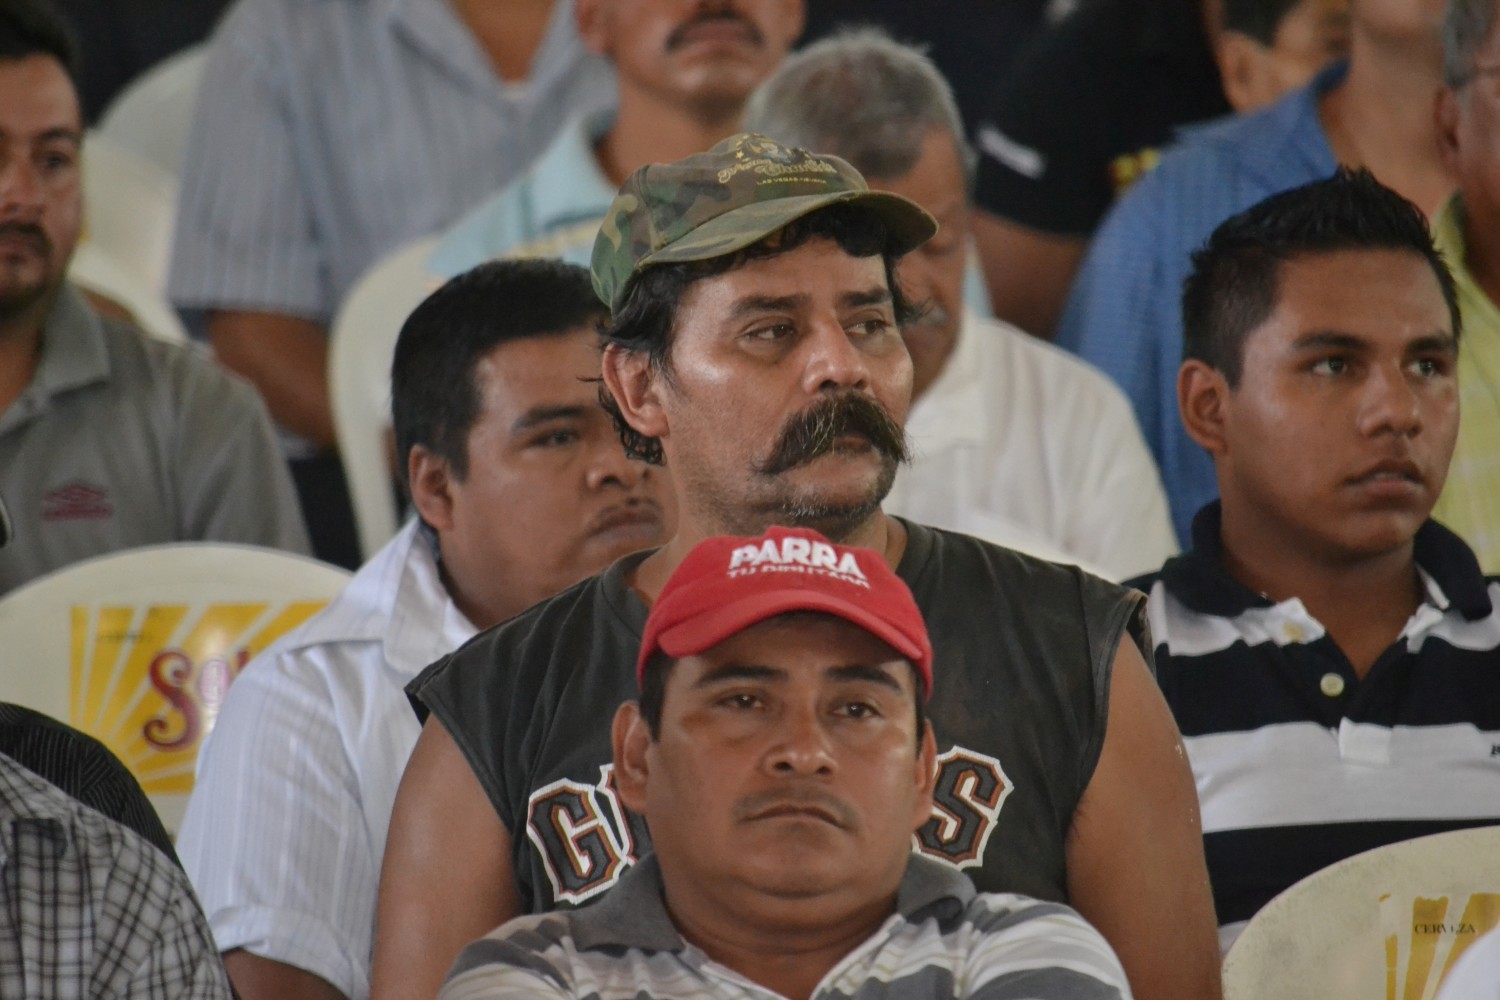 Marcha y evento contra la Reforma a la LFT Ingenio, Motzorongo; Veracruz